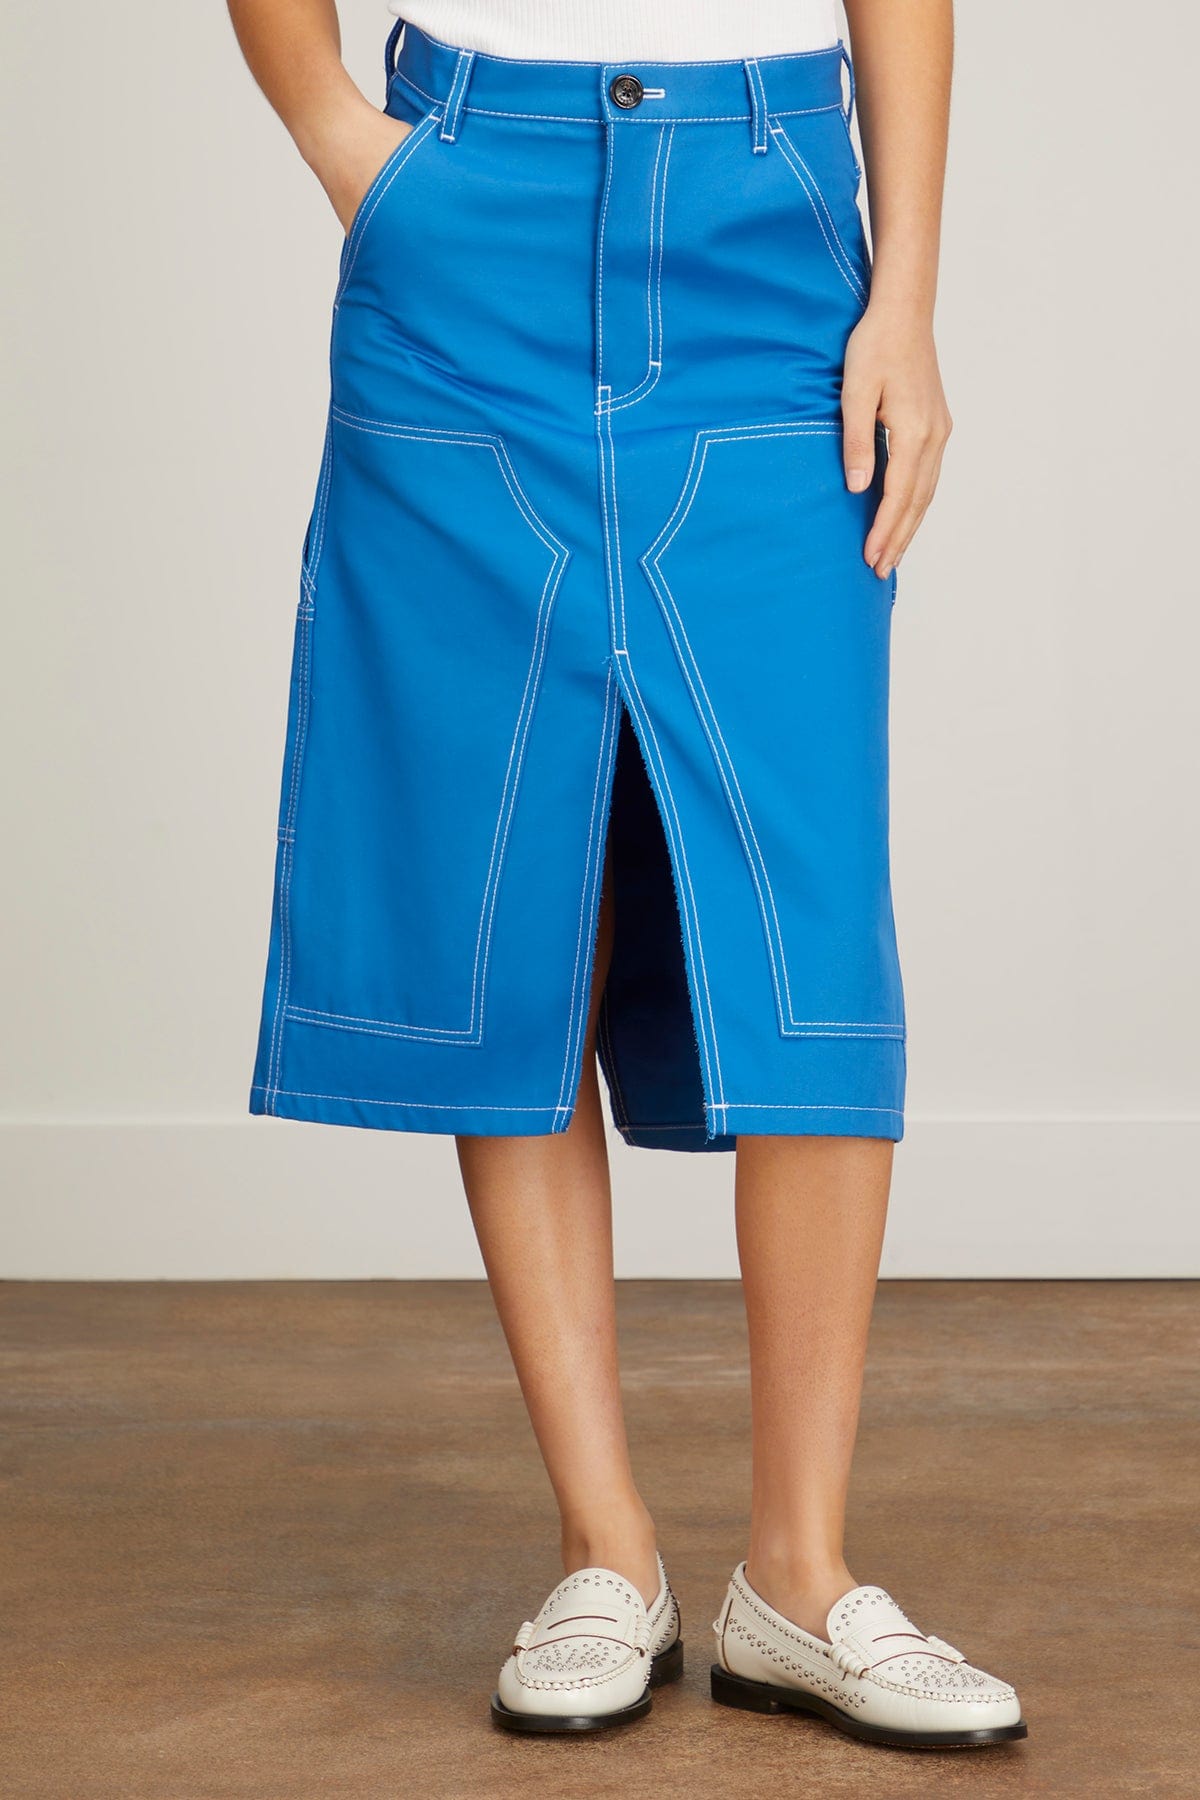 Meryll Rogge Skirts Short Workwear Skirt in Blue Meryll Rogge Short Workwear Skirt in Blue